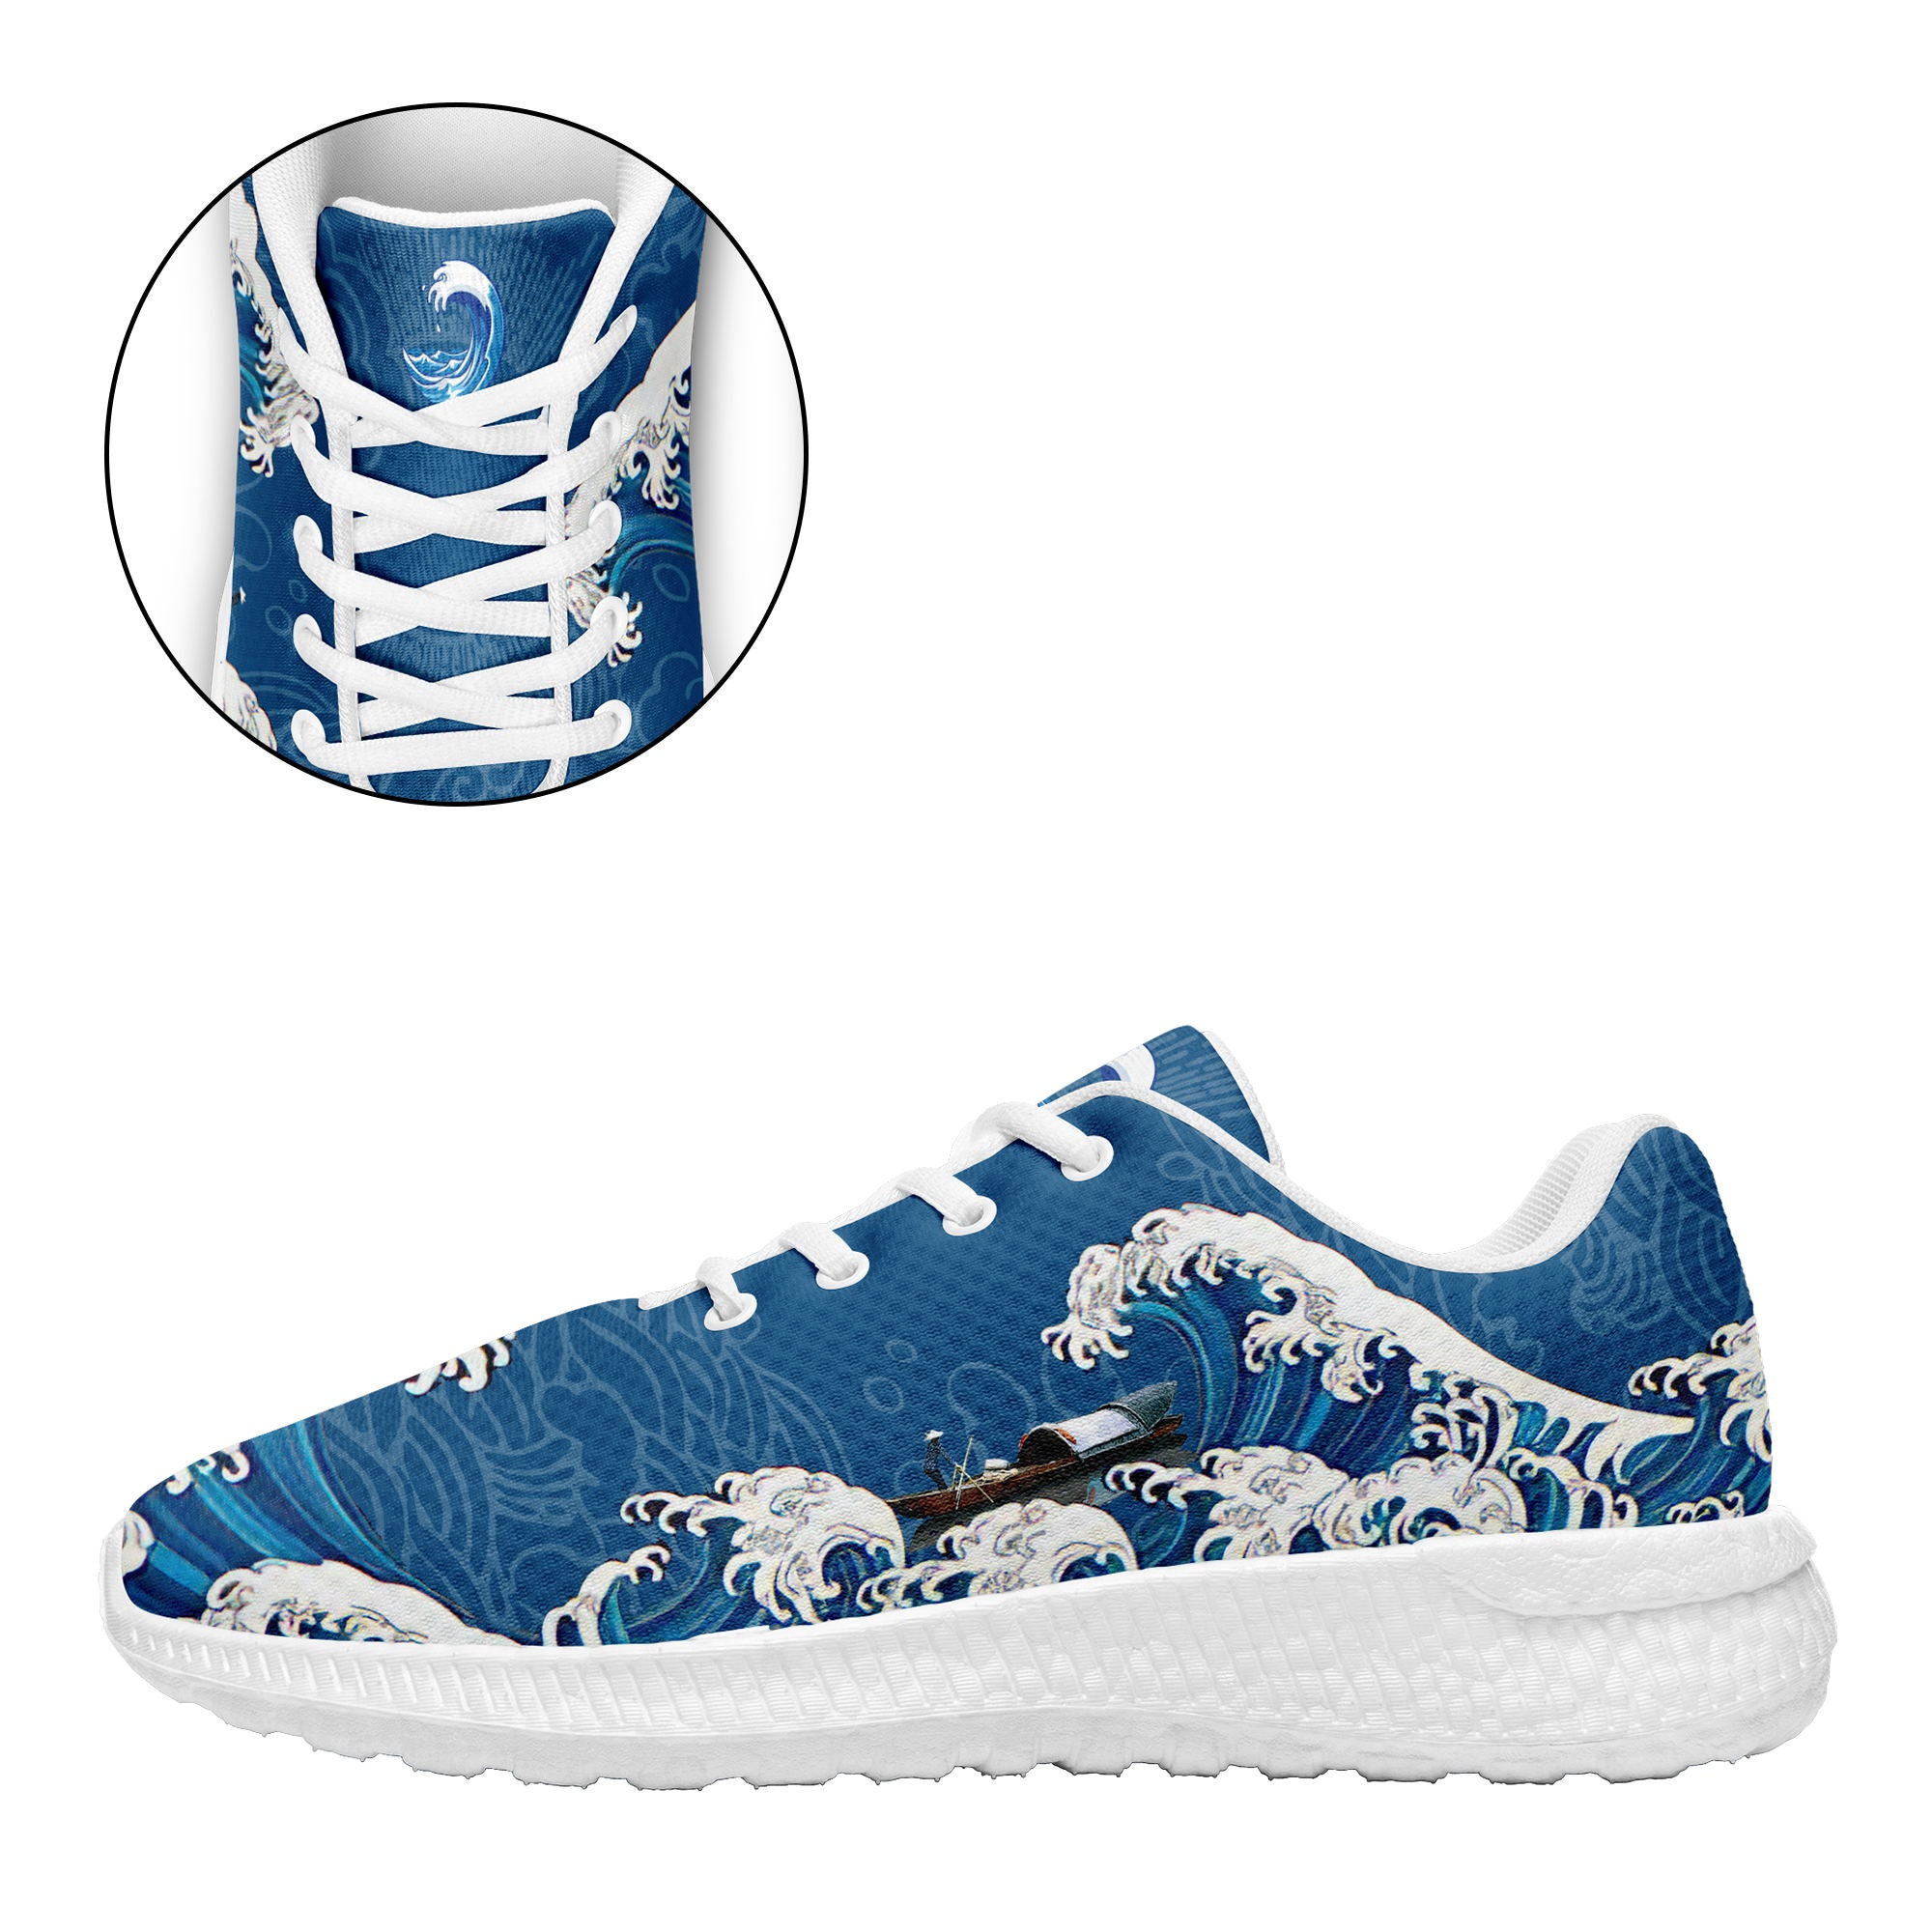 柔性定制个性化打印设计跑鞋时尚中国莆田妈祖特色主题运动鞋蓝色BLD2-7